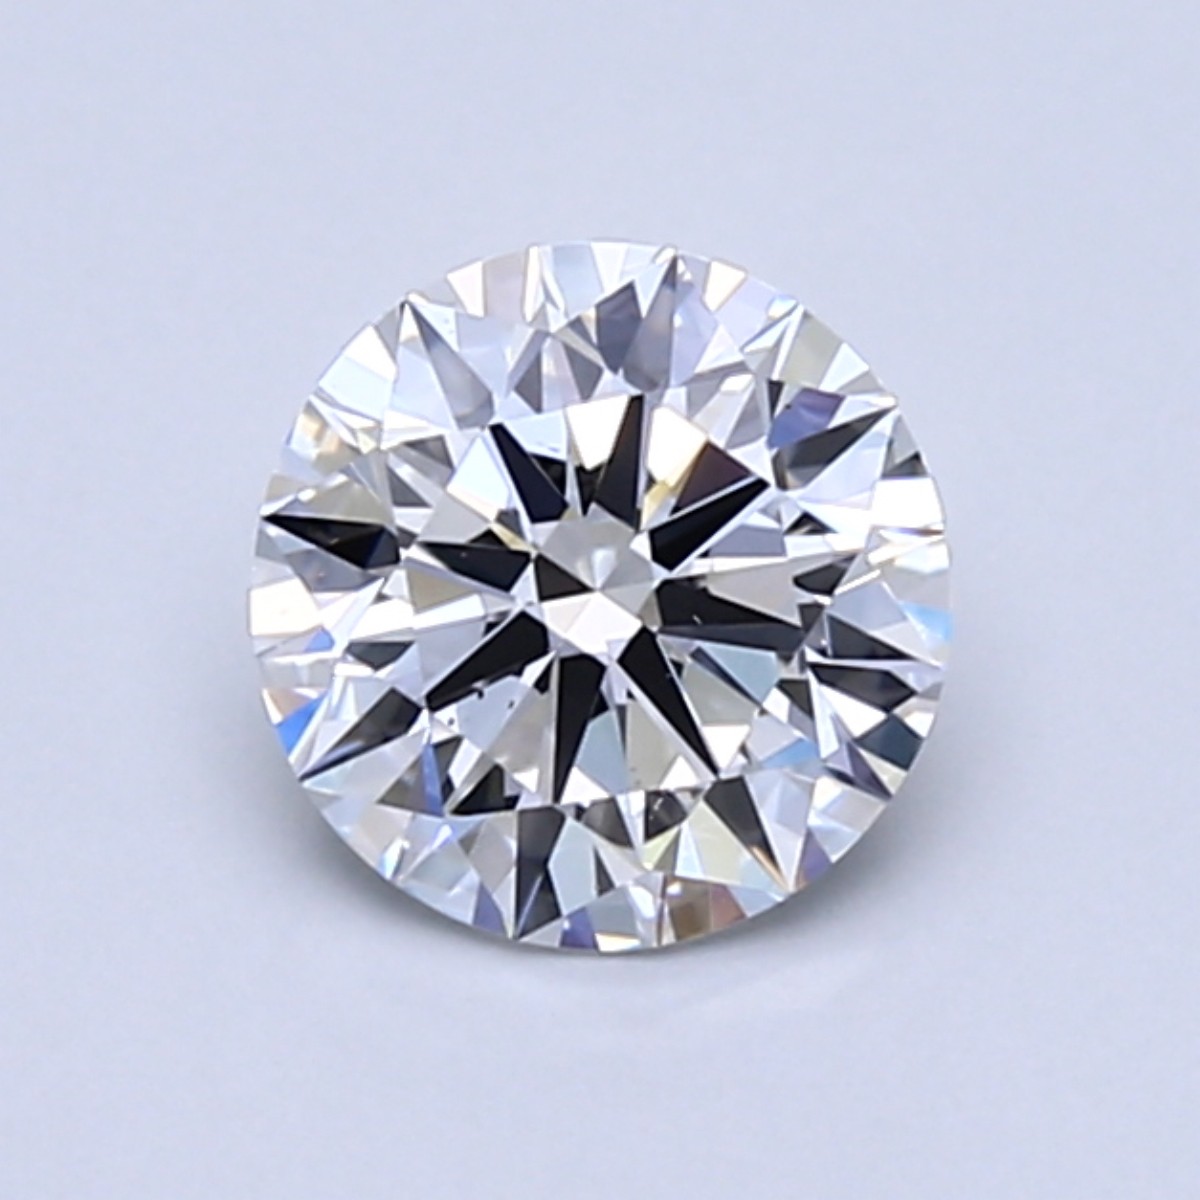 1.8 carat D color diamond